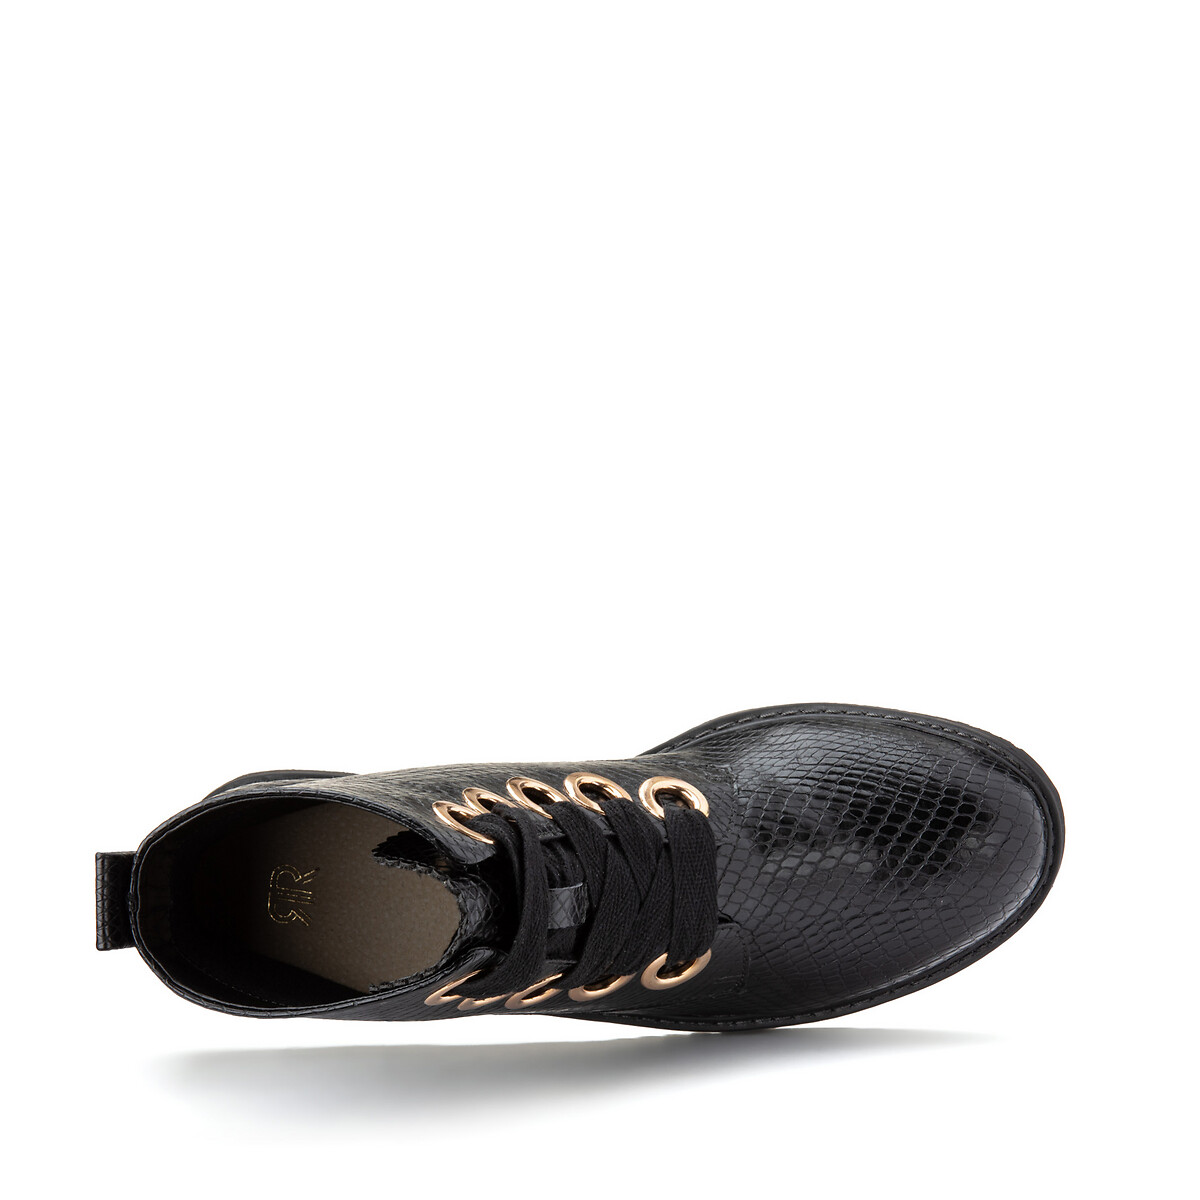 Ботинки LaRedoute С рисунком под кожу питона 43 черный, размер 43 - фото 4